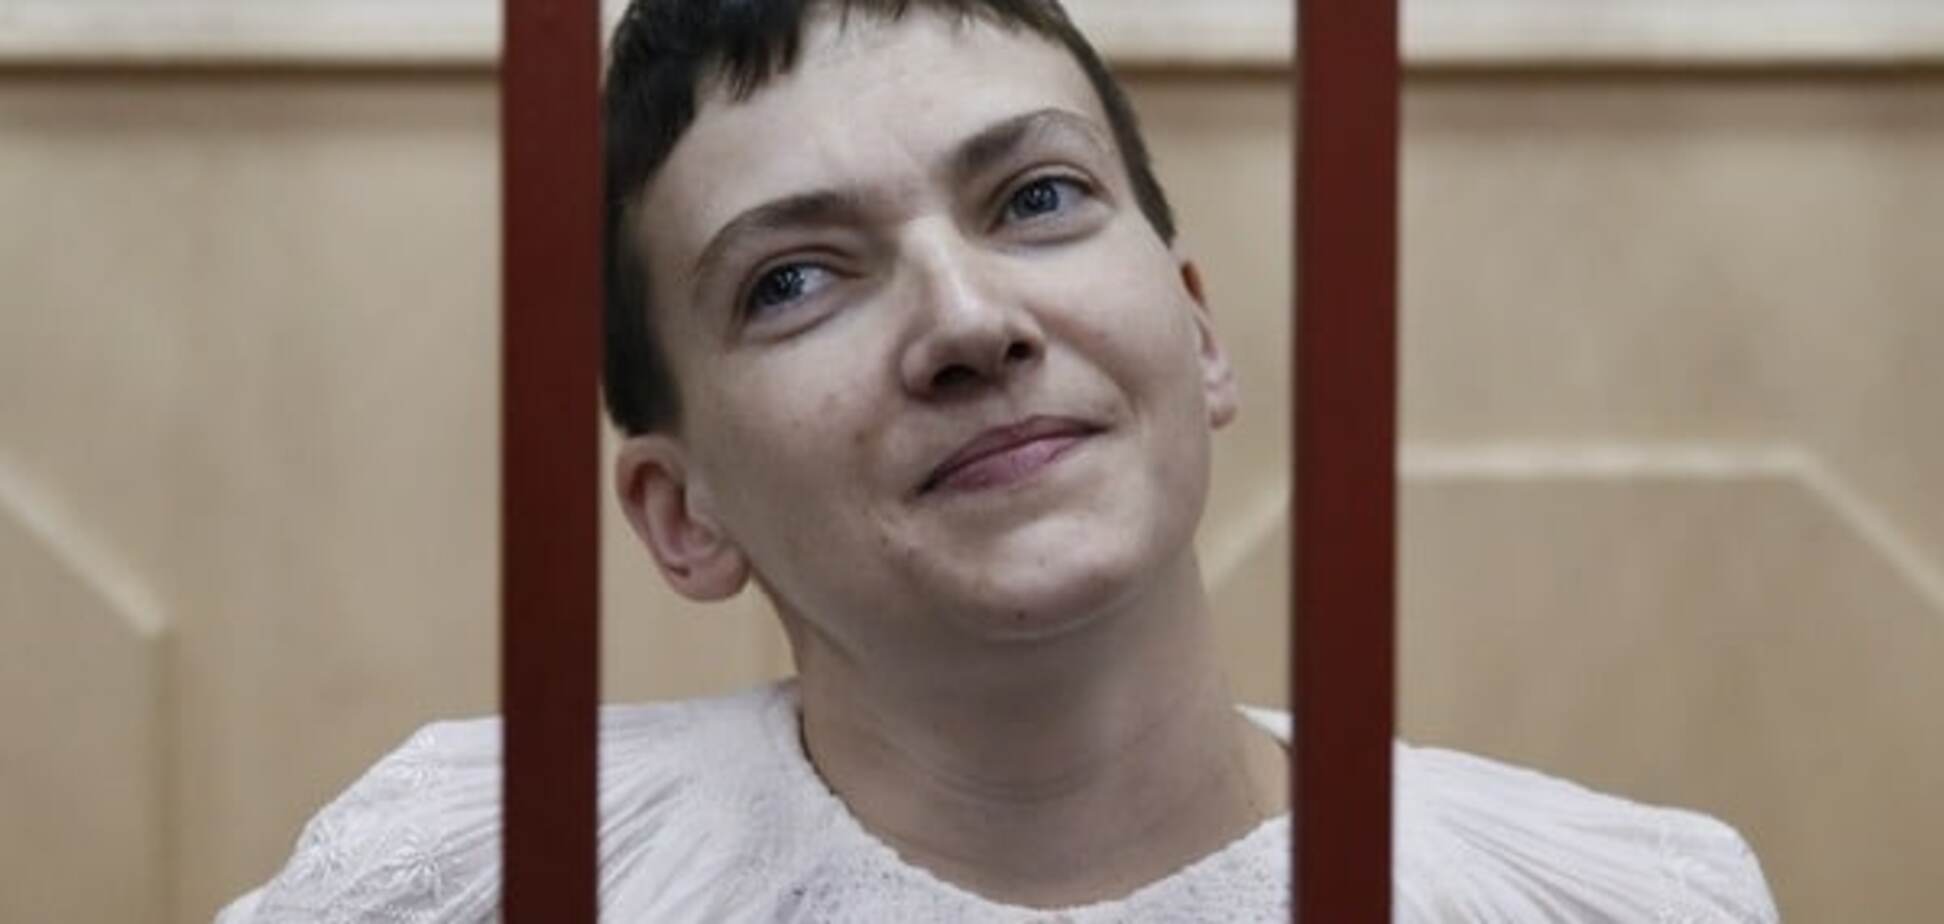 Суд над Савченко: прокуратура готовит дополнительные обвинения - адвокат